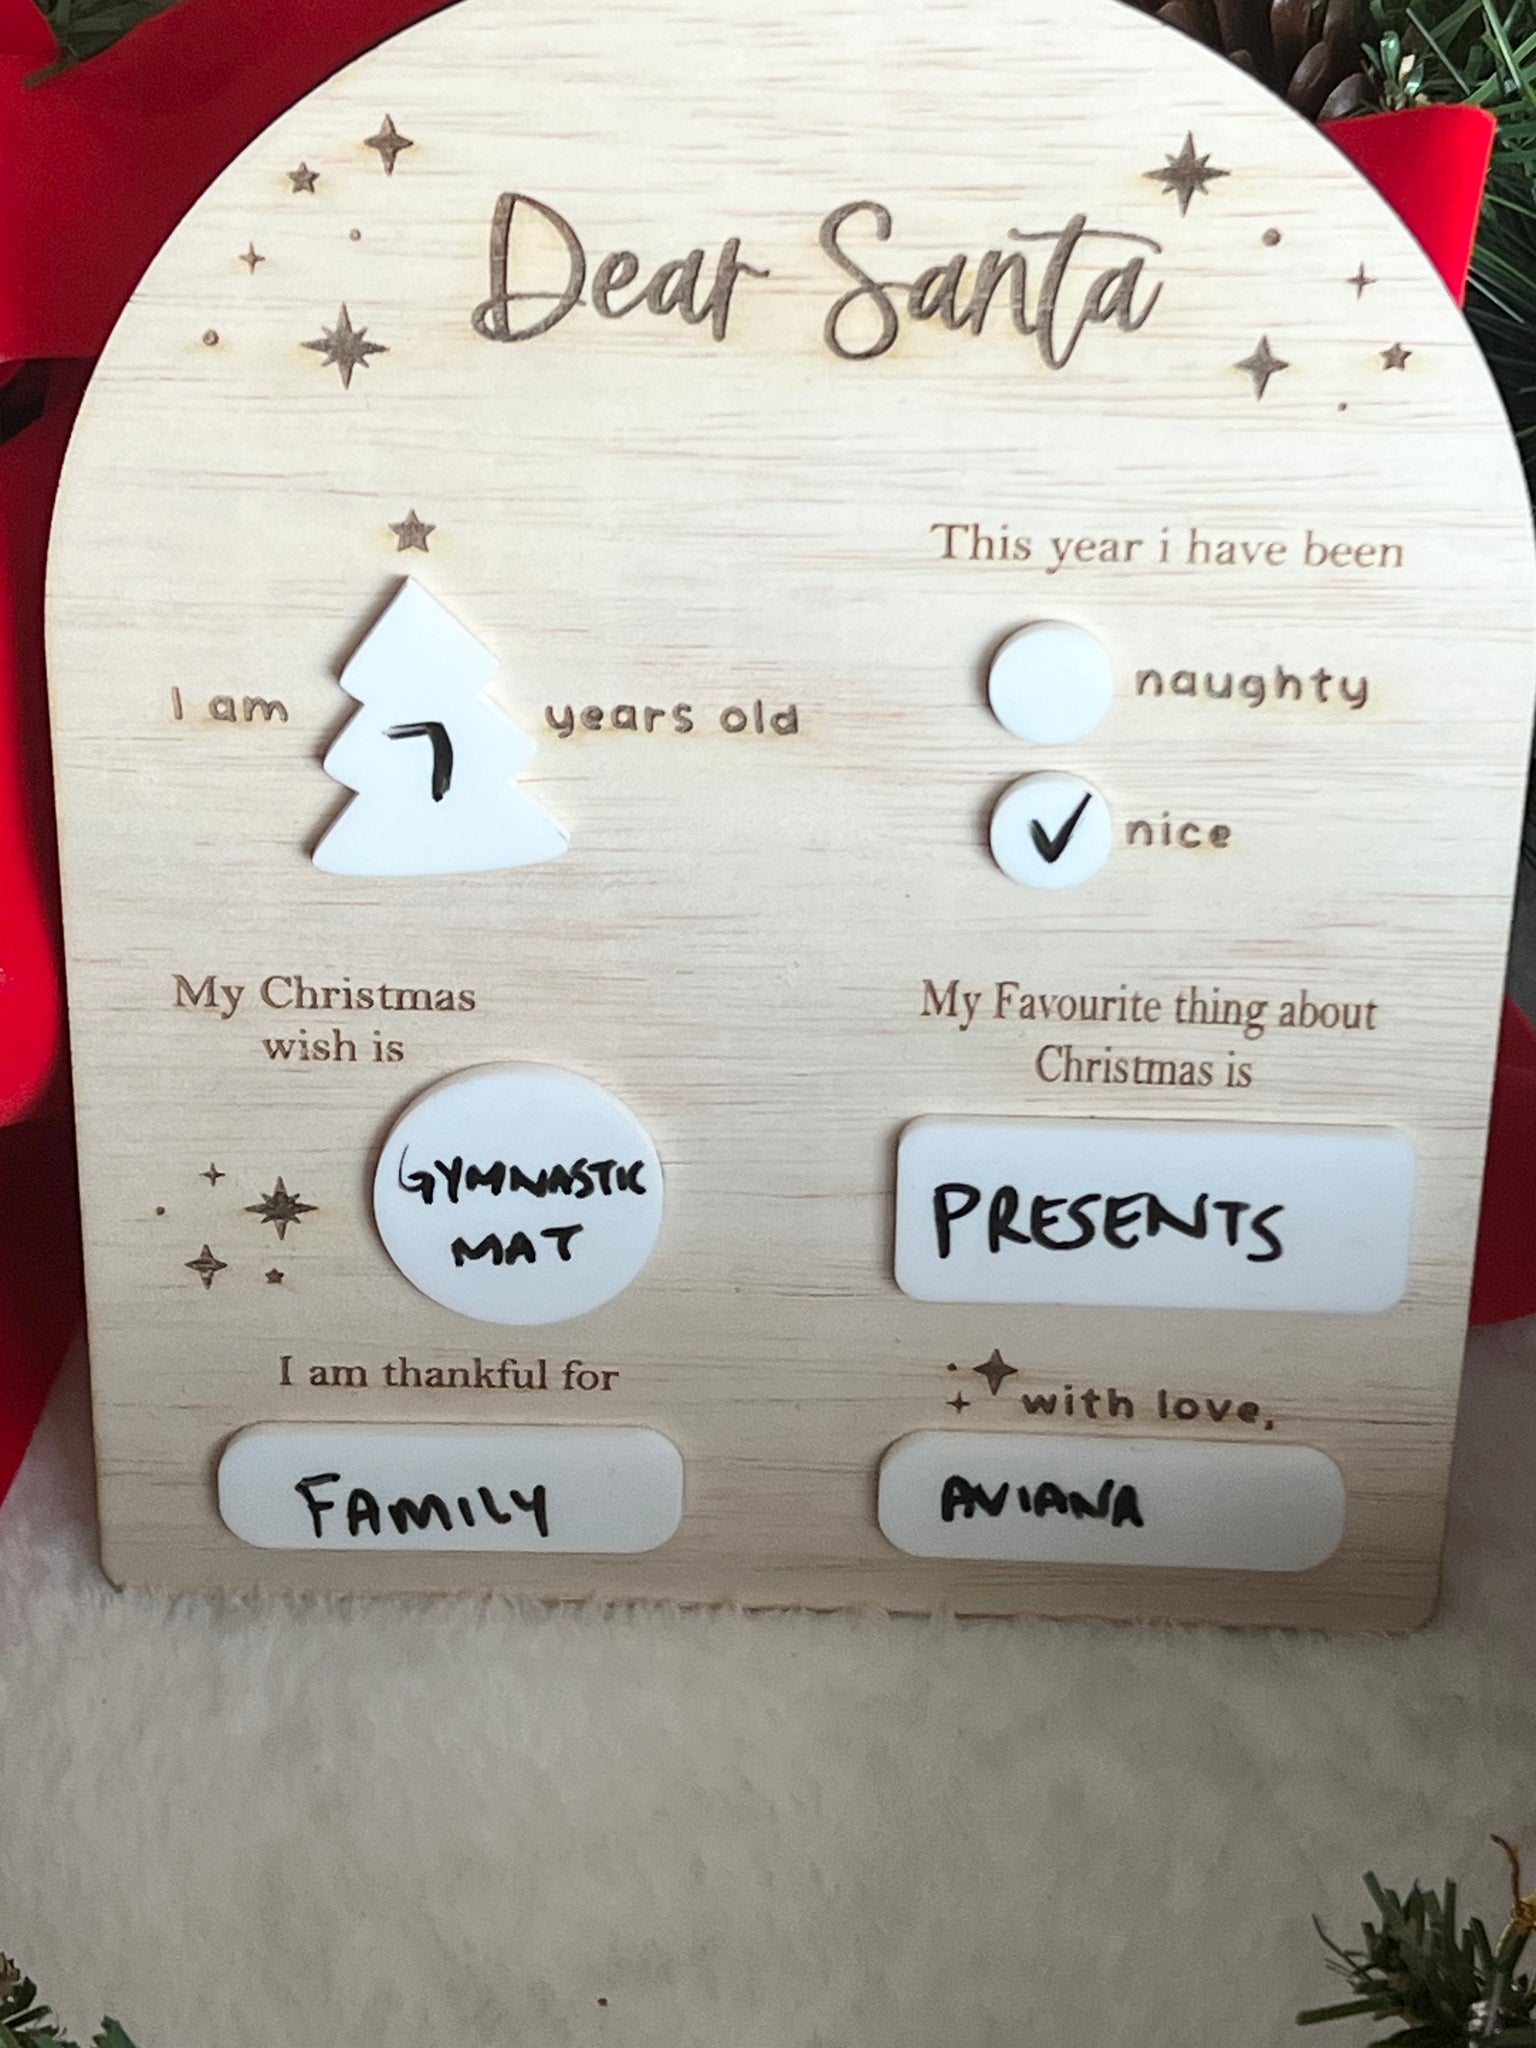 Dear Santa board